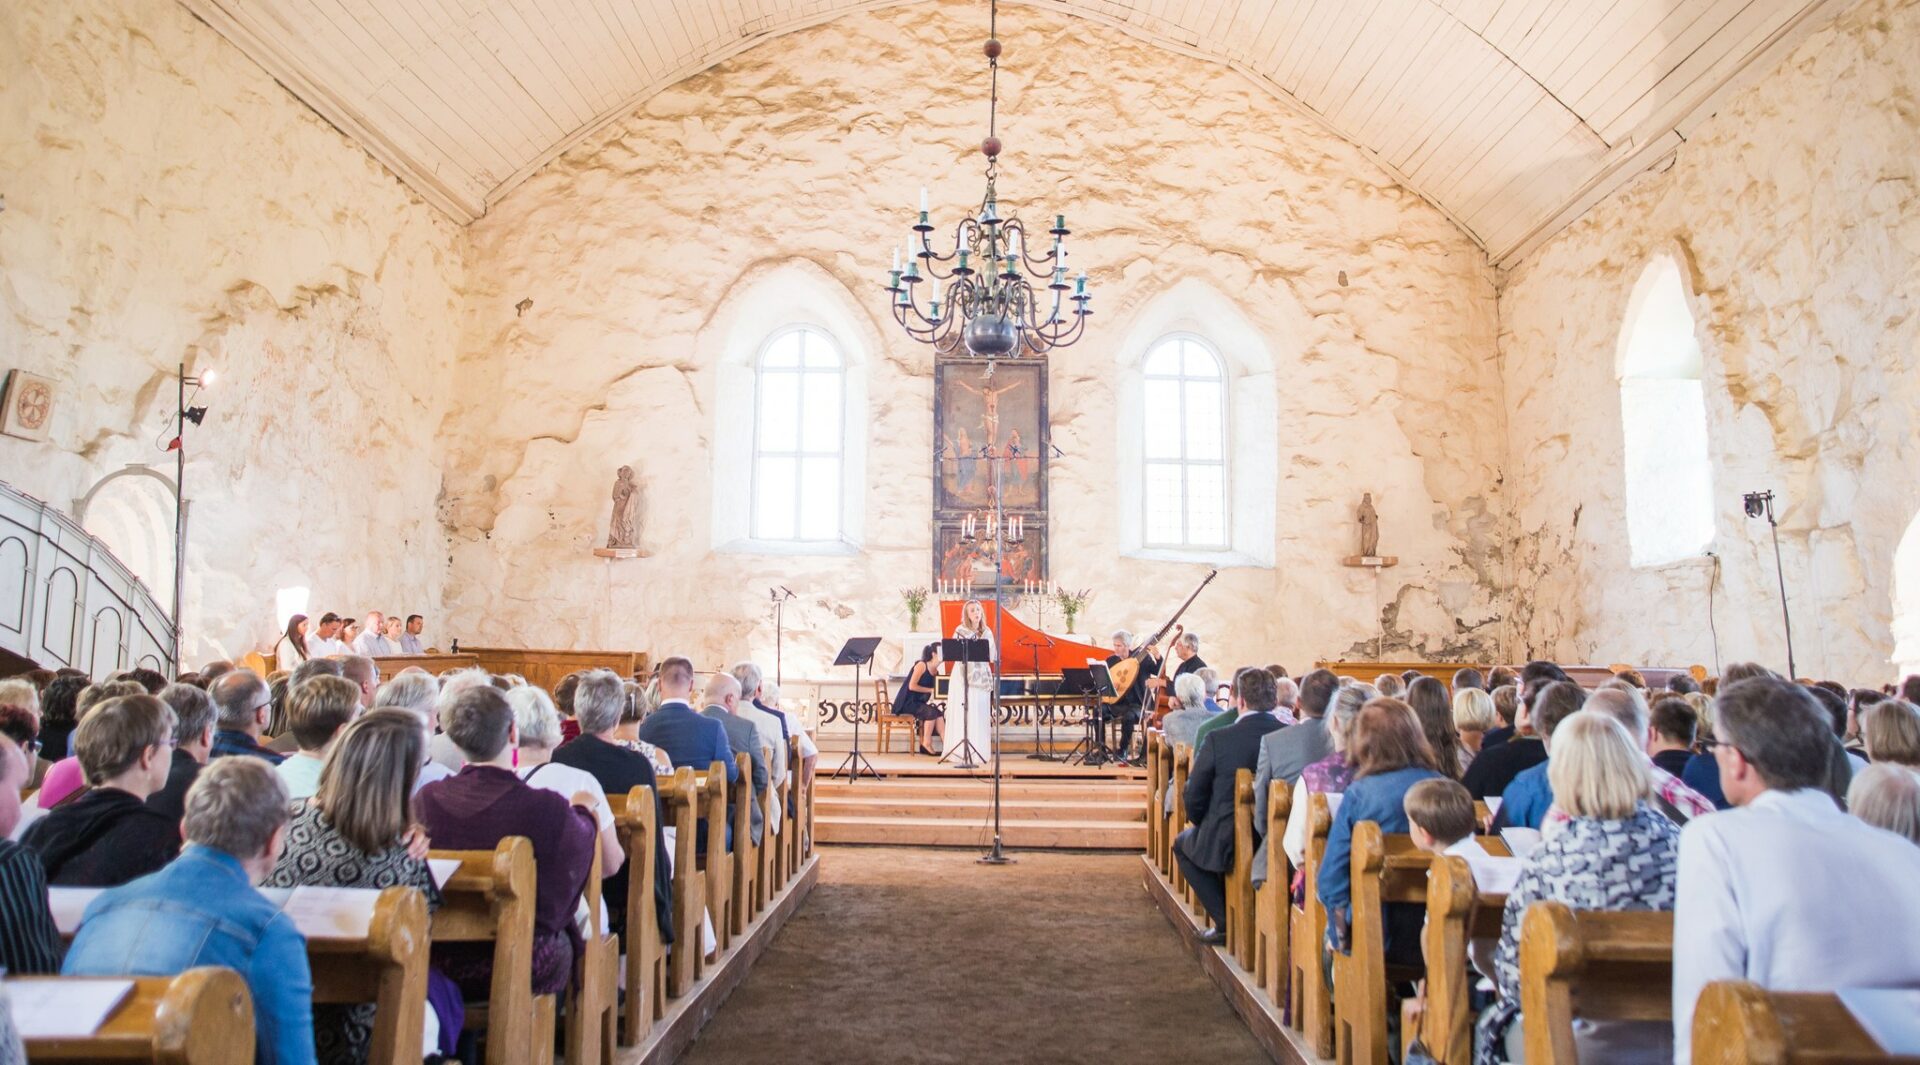 Konsertti vaaleaseinäisen kivikirkon sisällä, keskellä kuvaa on kattokruunu, esiintyjät ja kuvan reunoilla kirkon penkit ja yleisö takaa päin kuvattuna